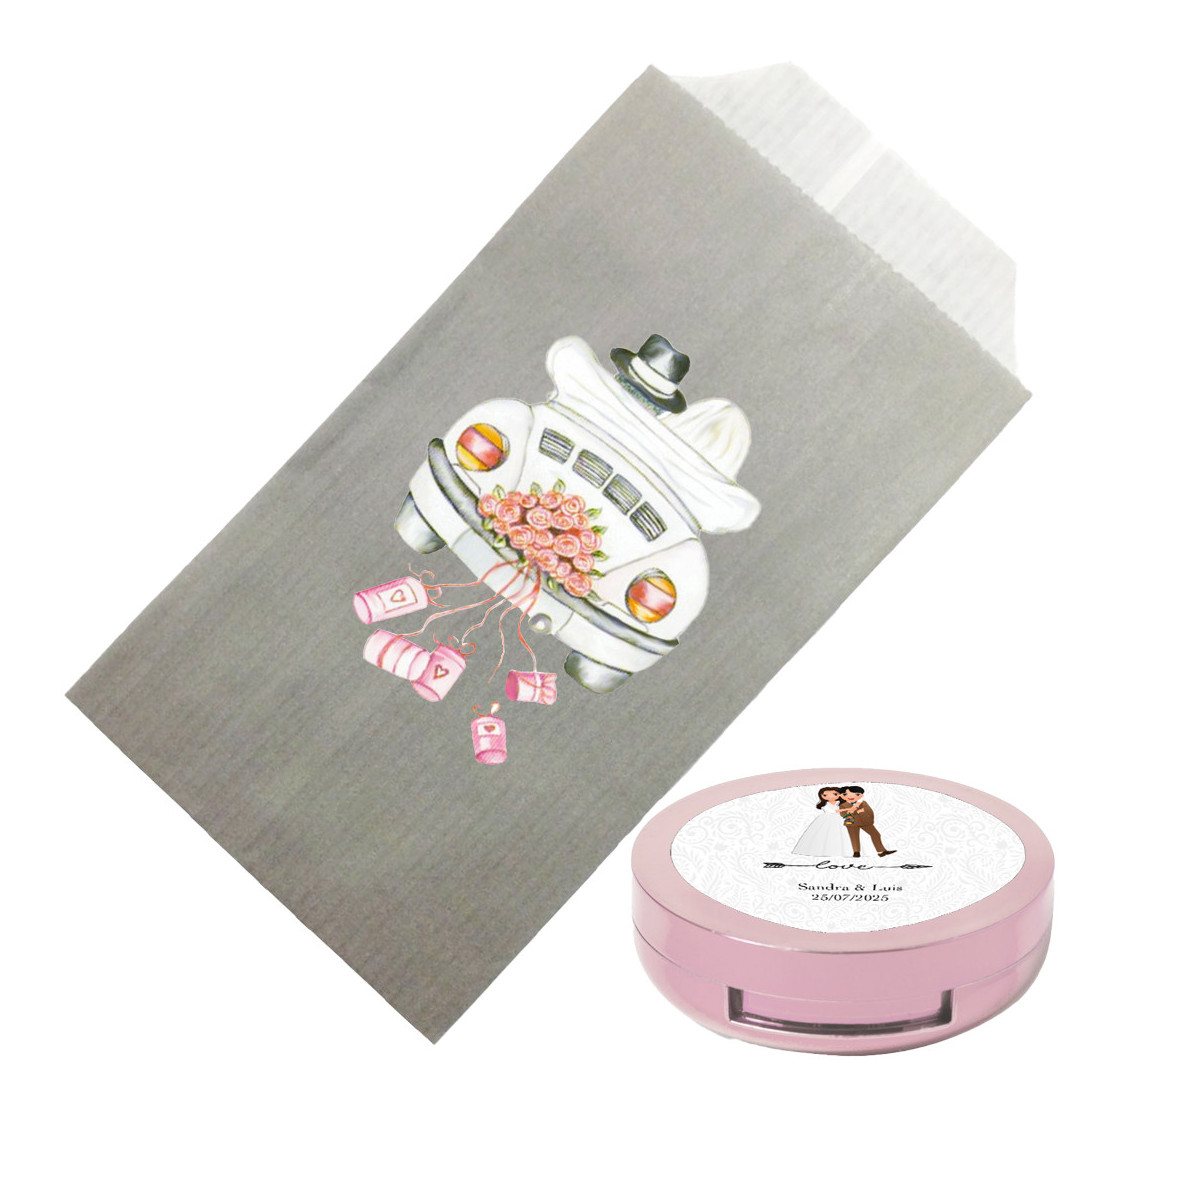 Brilho labial em creme apresentado em envelope kraft e personalizado com adesivo